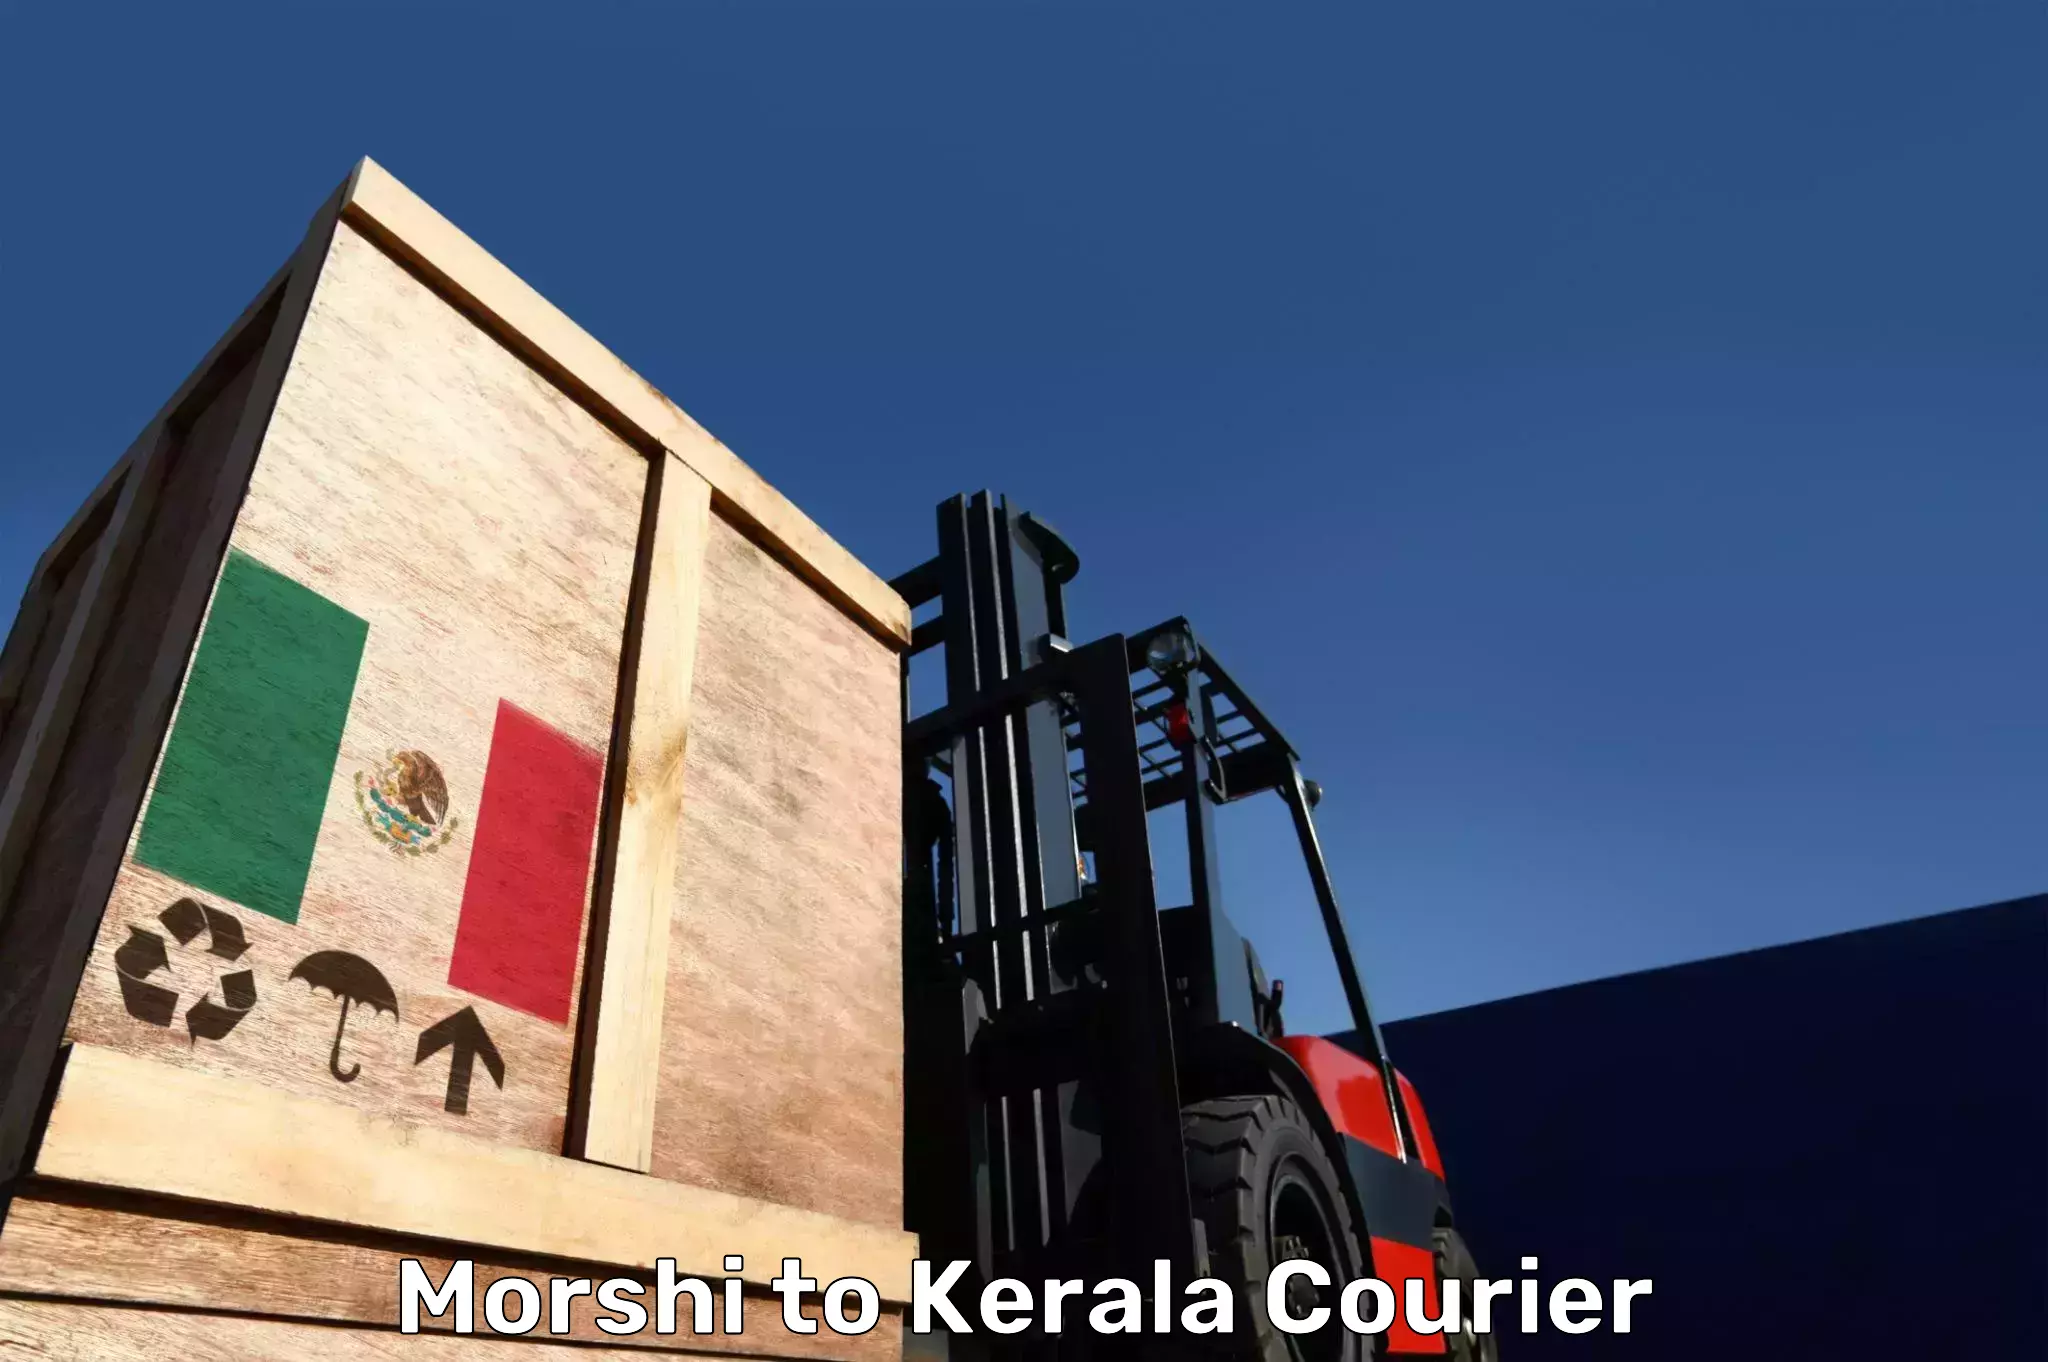 Luggage shipping rates Morshi to Munnar